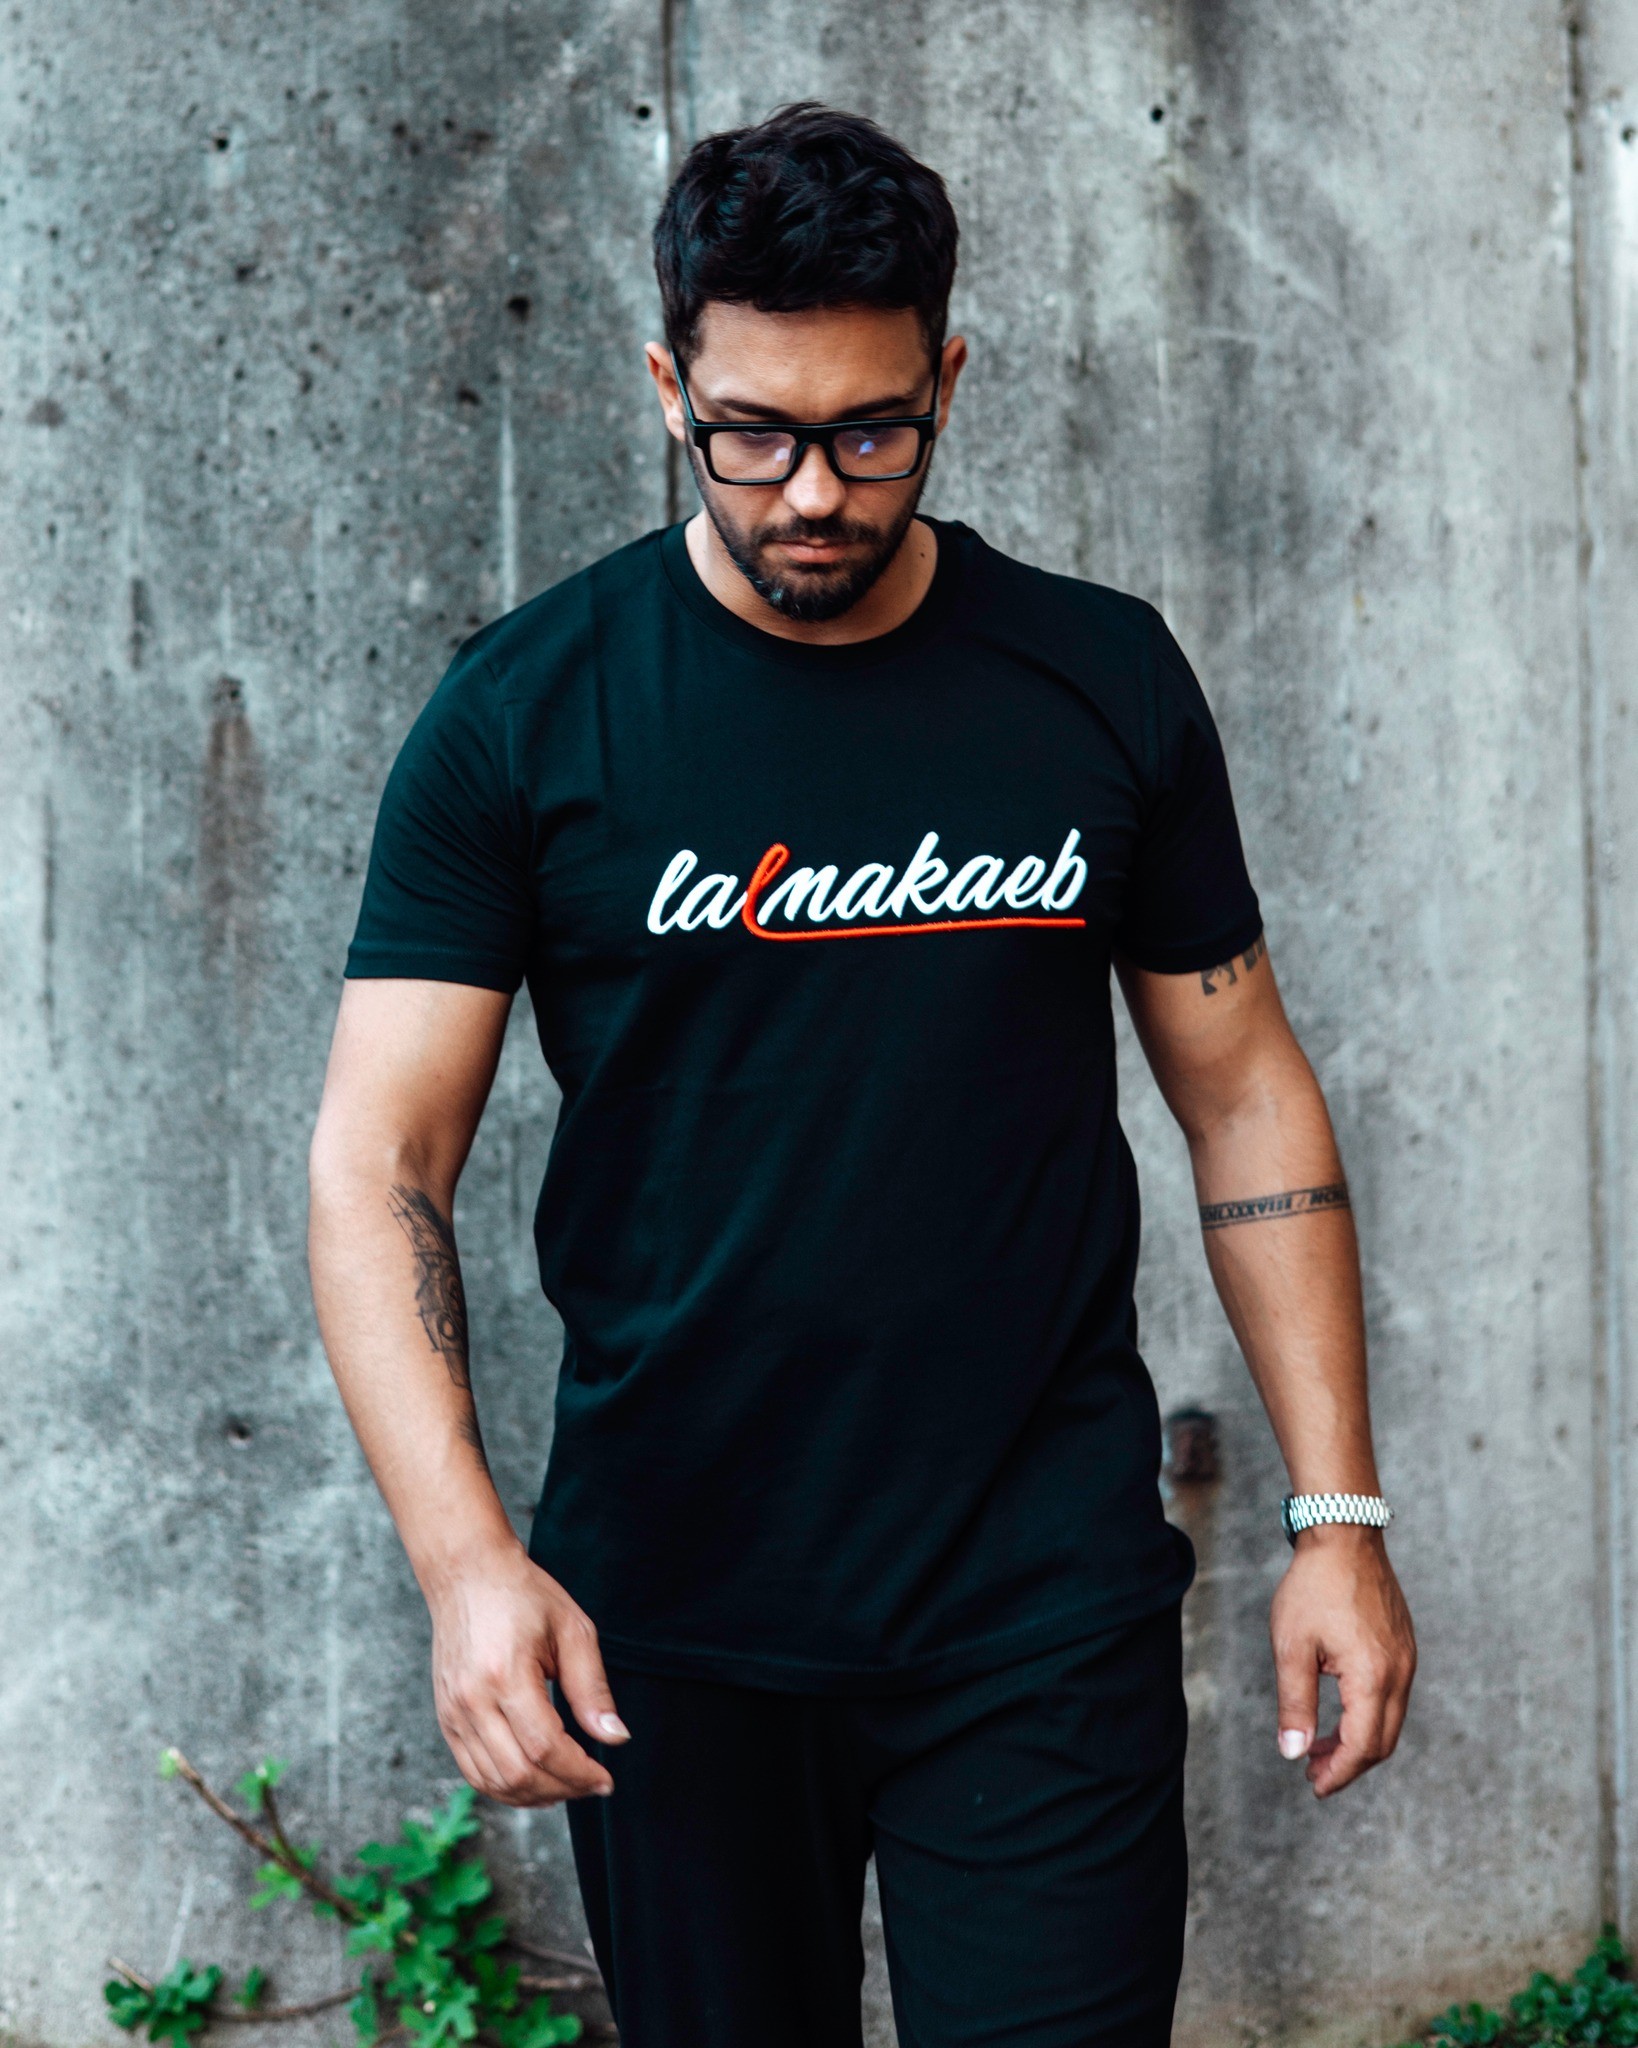 Lamakaeb t-shirt